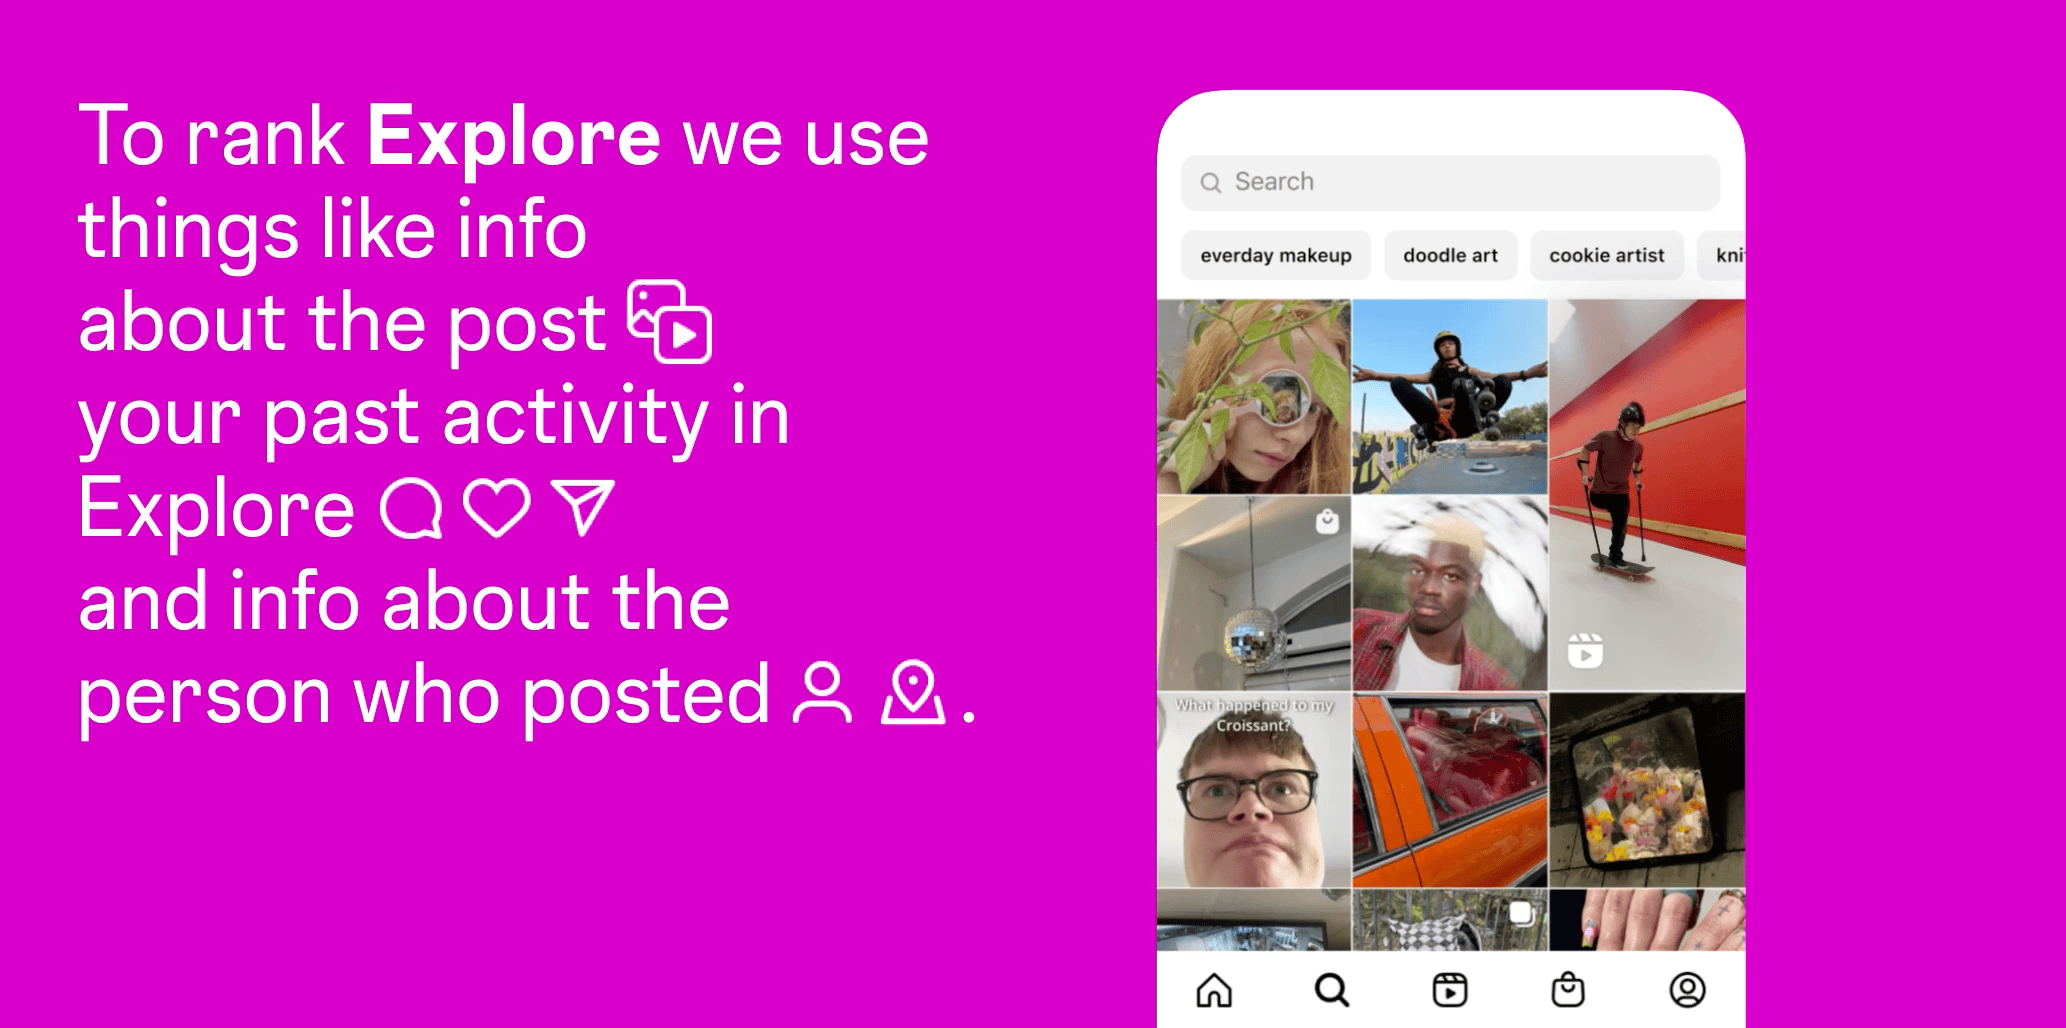 Instagram explica cómo funciona su algoritmo para recomendar contenido en Explorar. (Instagram)